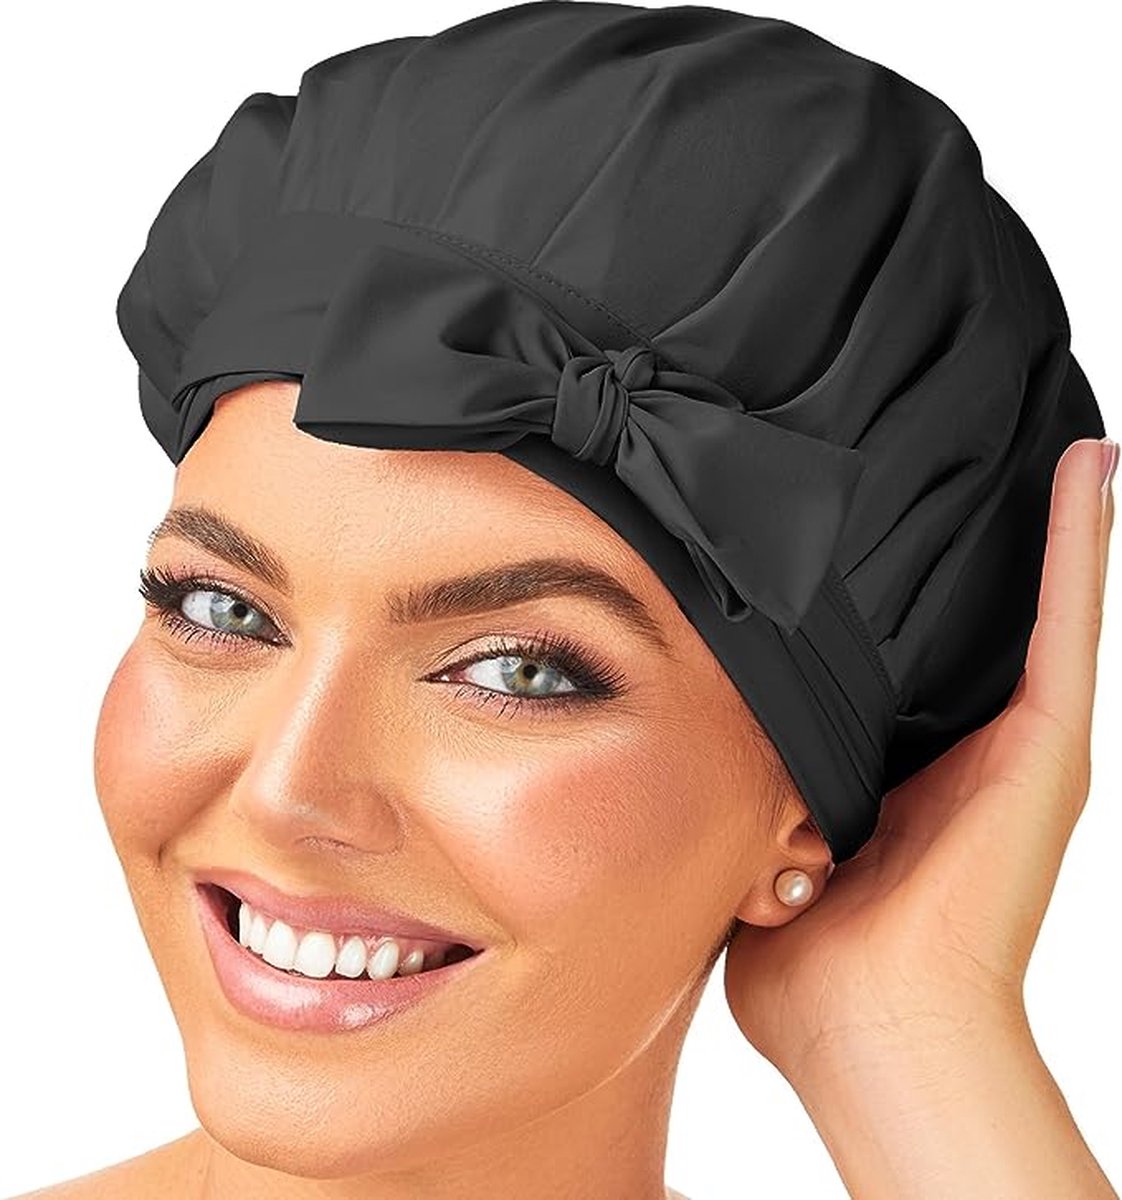 Bonnet de nuit en soie pour femmes, taille ajustable, Bonnet de